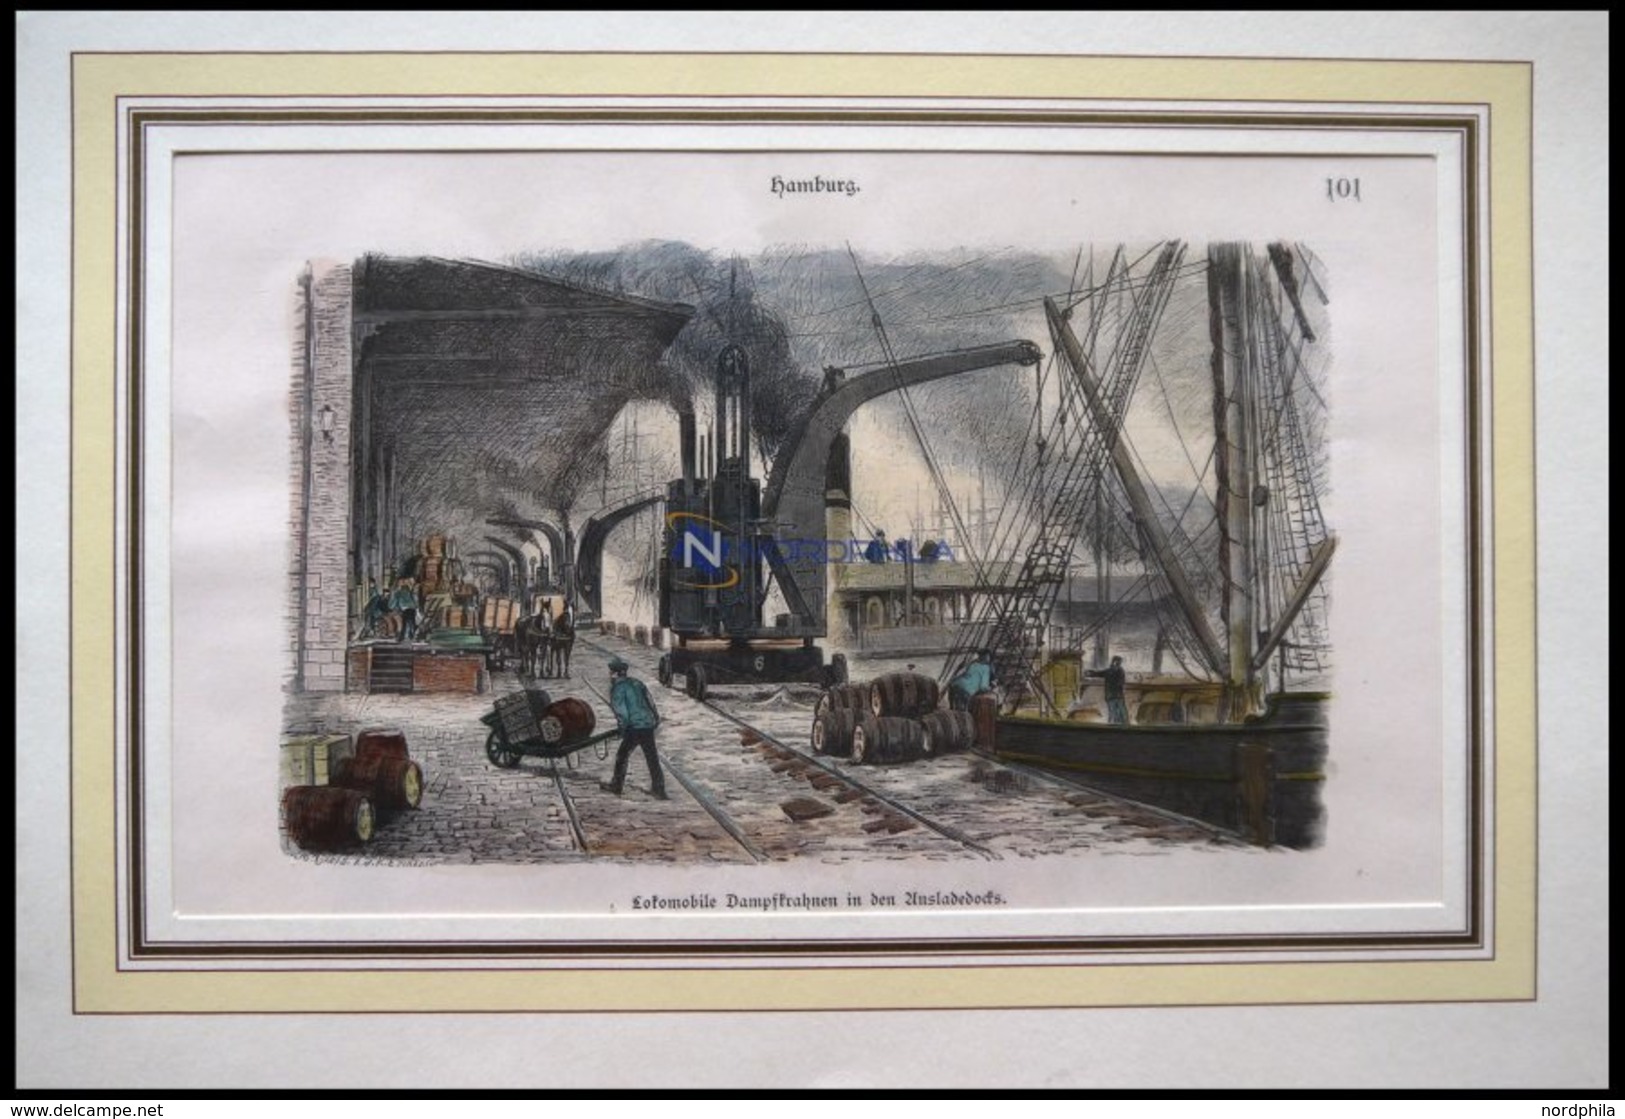 HAMBURG: Lokomobile Dampfkrahnen In Den Ausladedocks, Kolorierter Holzstich Von 1881 - Lithographies